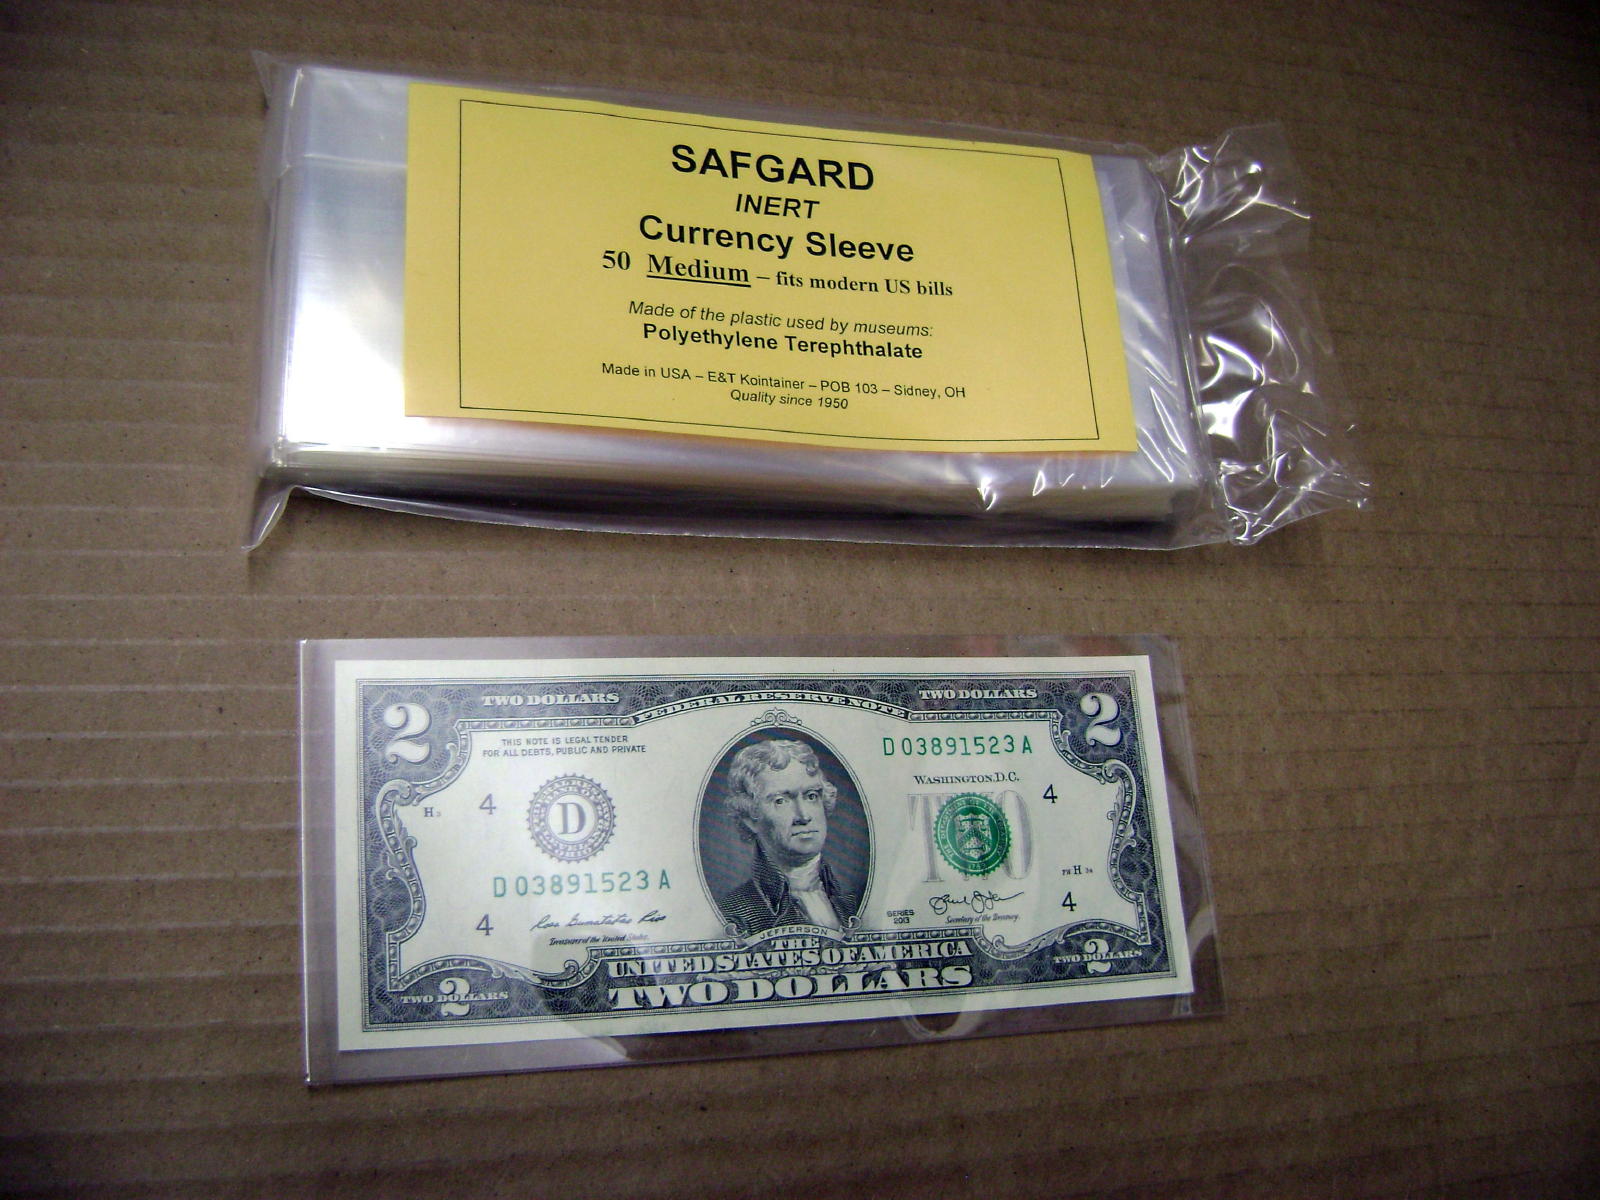 Safgard (TM) Inert Sleeves - Postcard - 100-Pack MADE IN USA